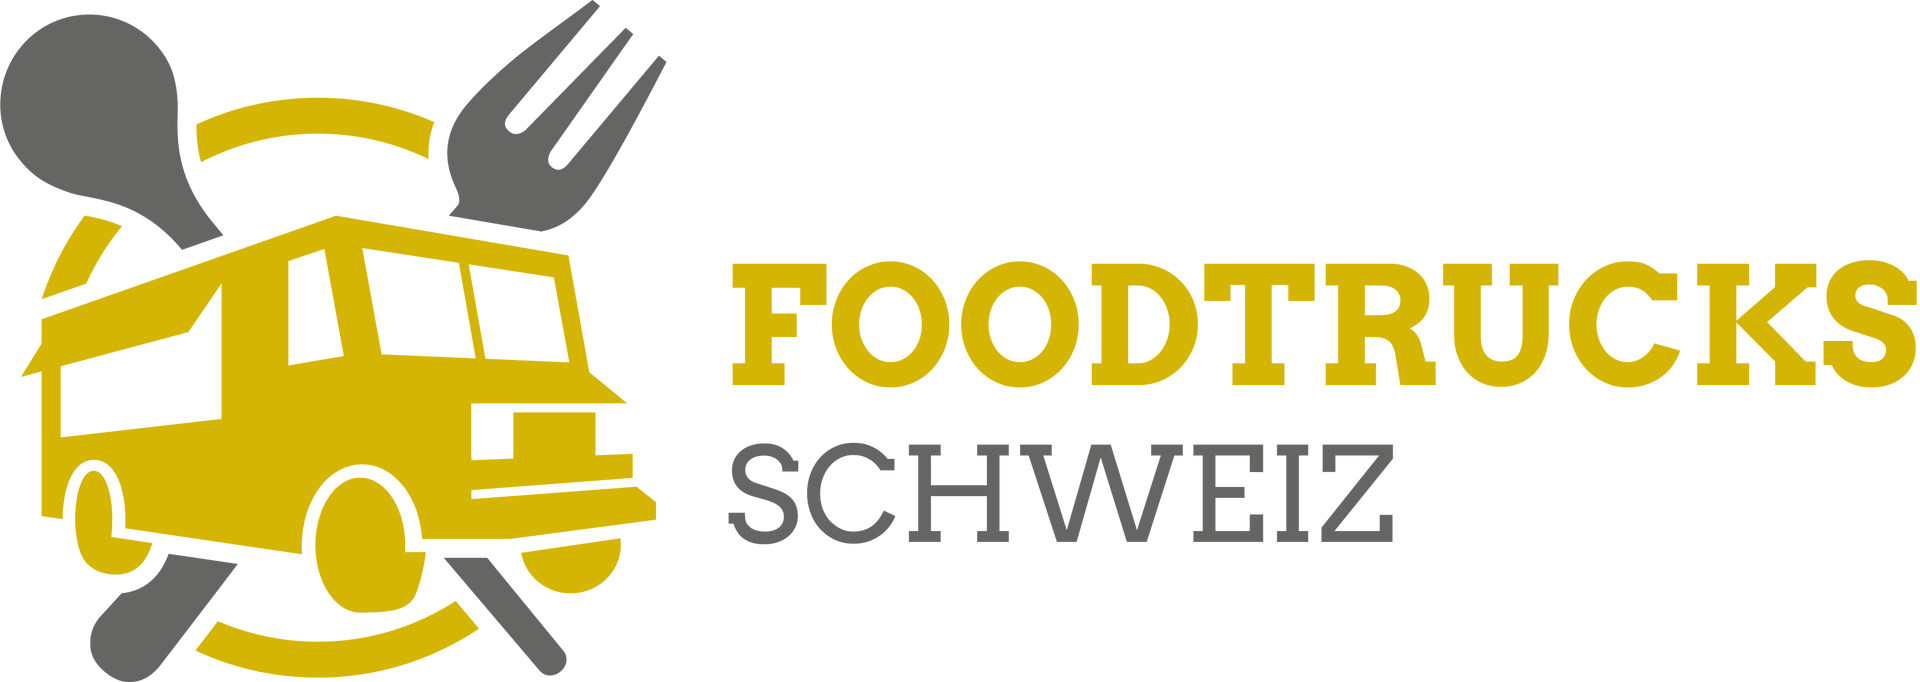 Logo Foodtracks Schweiz